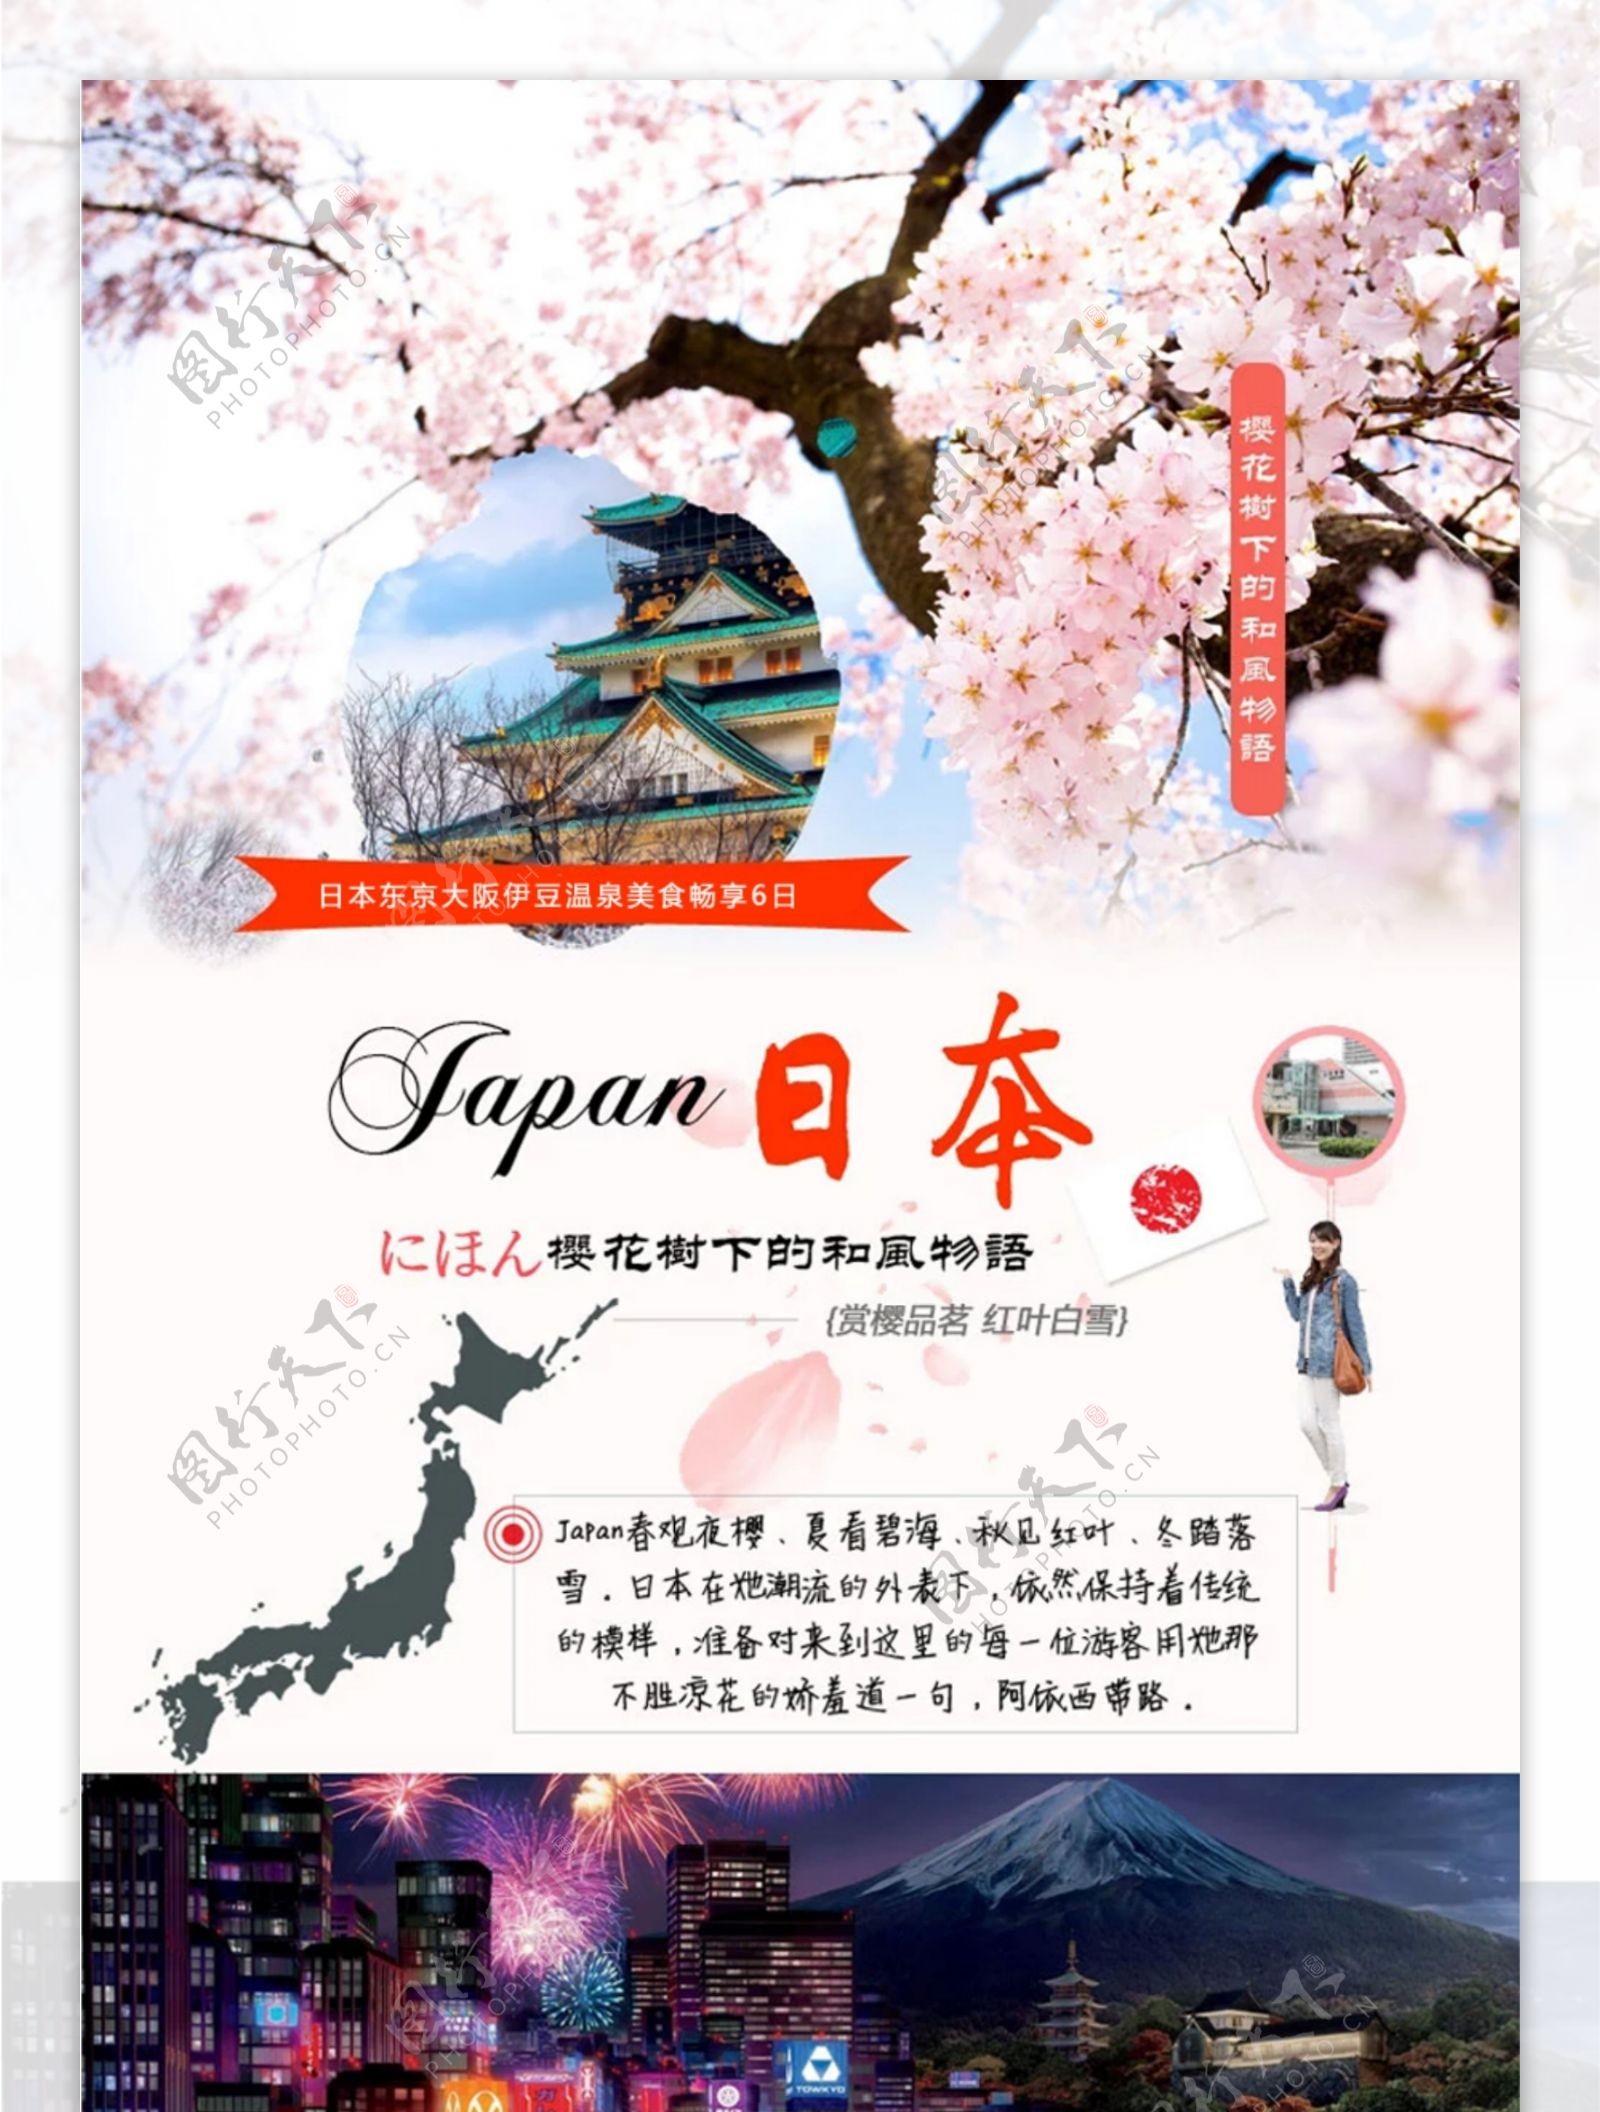 旅行社日本旅游行程设计